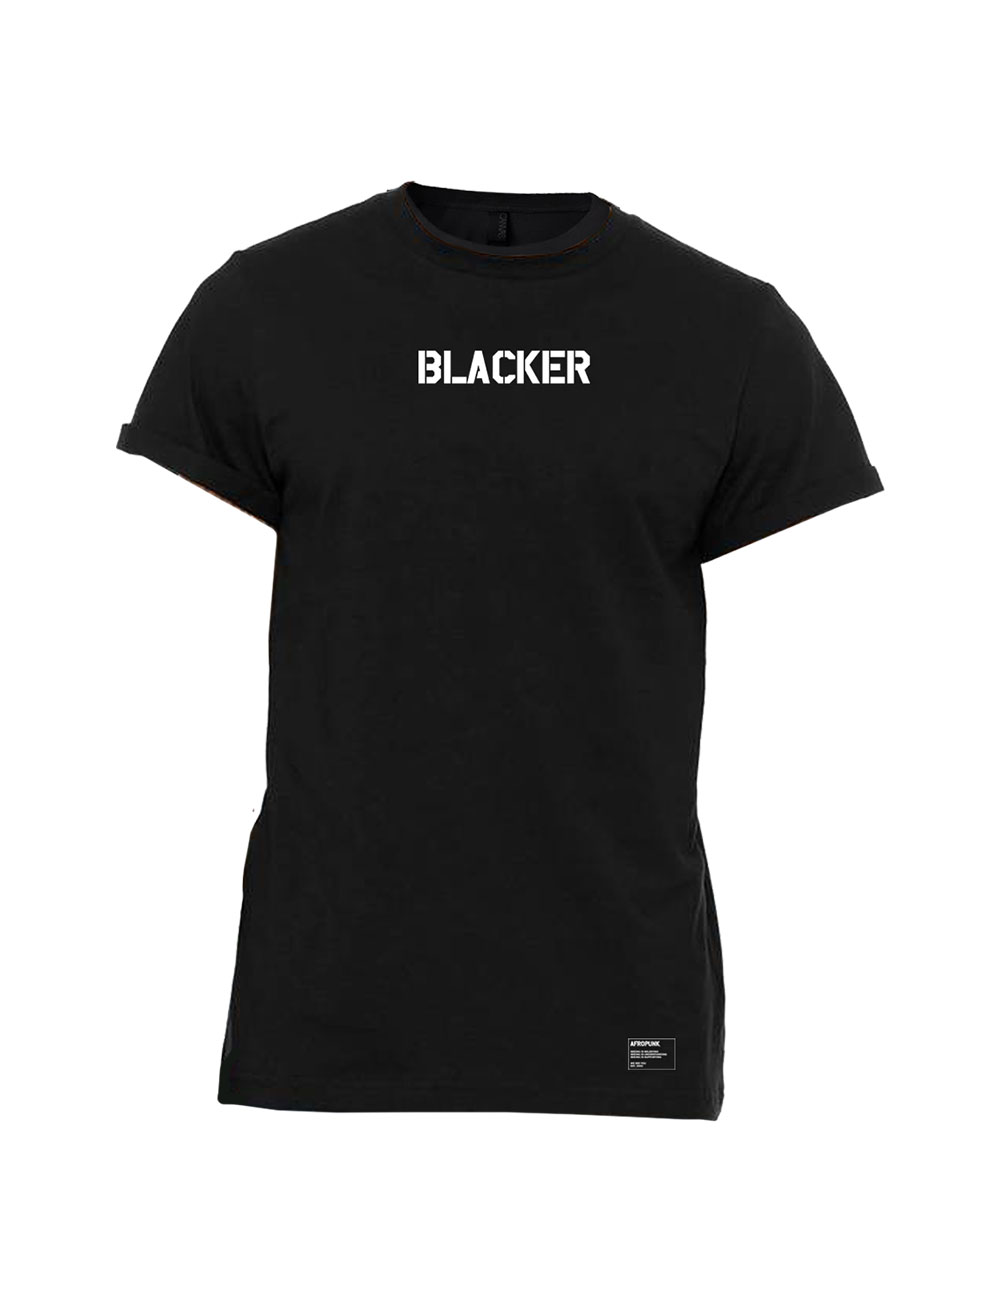 Afropunk - Official Merch Shop - T-Shirts - Blacker roll cuff tee